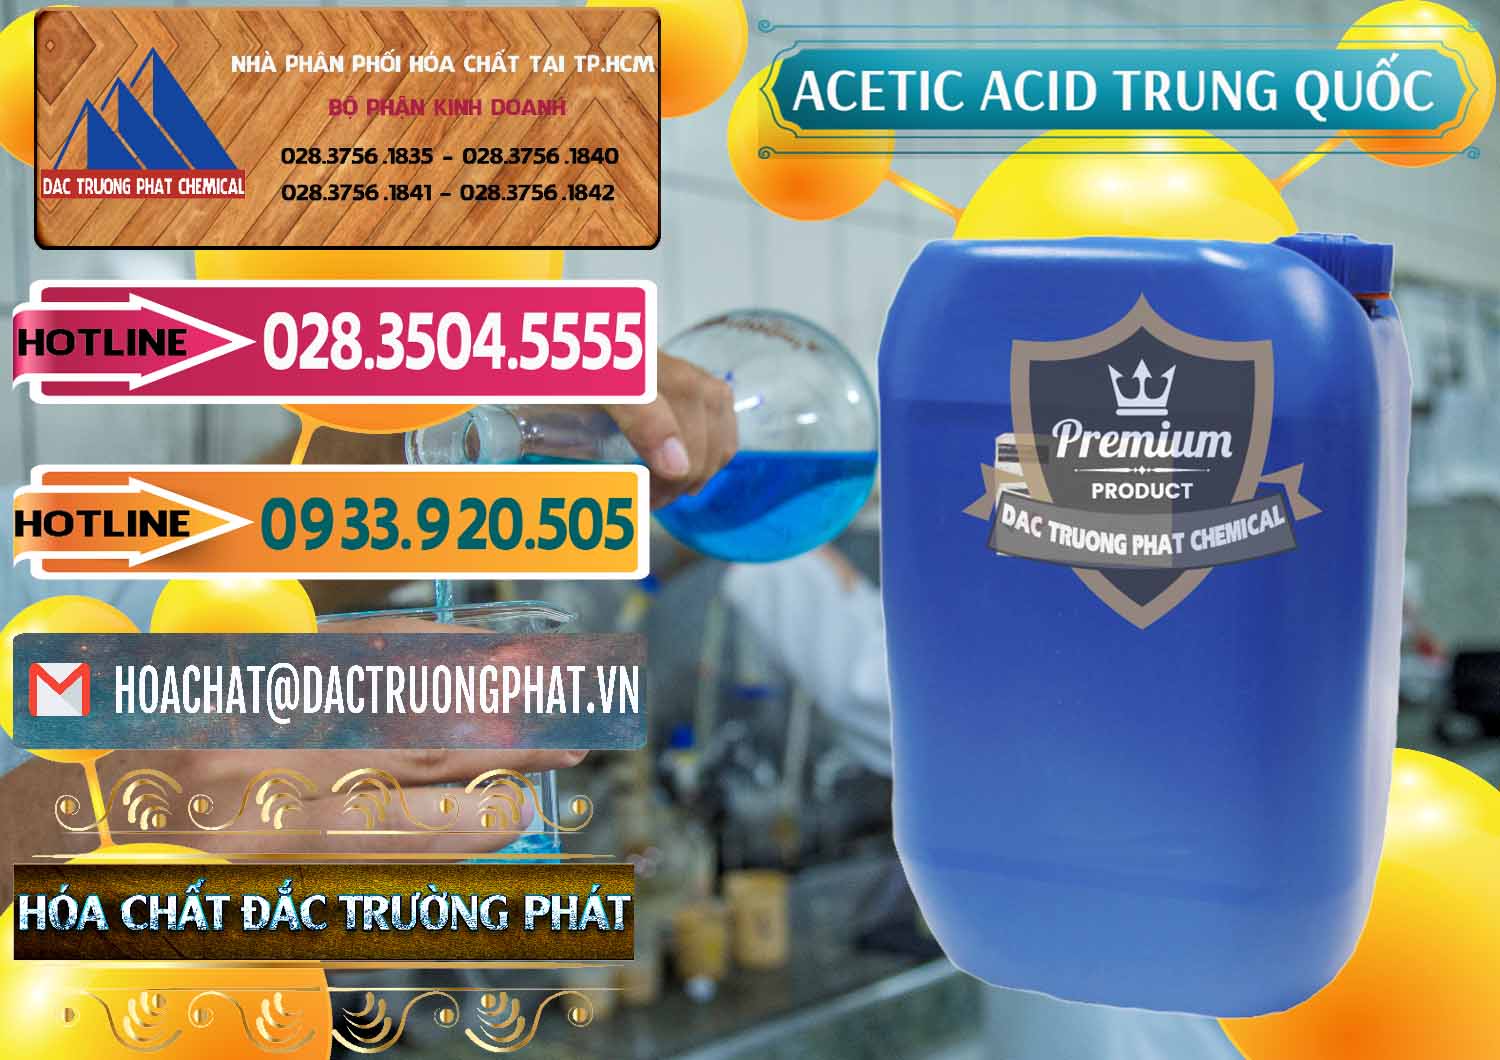 Công ty chuyên bán _ cung ứng Acetic Acid – Axit Acetic Trung Quốc China - 0358 - Đơn vị chuyên kinh doanh - phân phối hóa chất tại TP.HCM - dactruongphat.vn